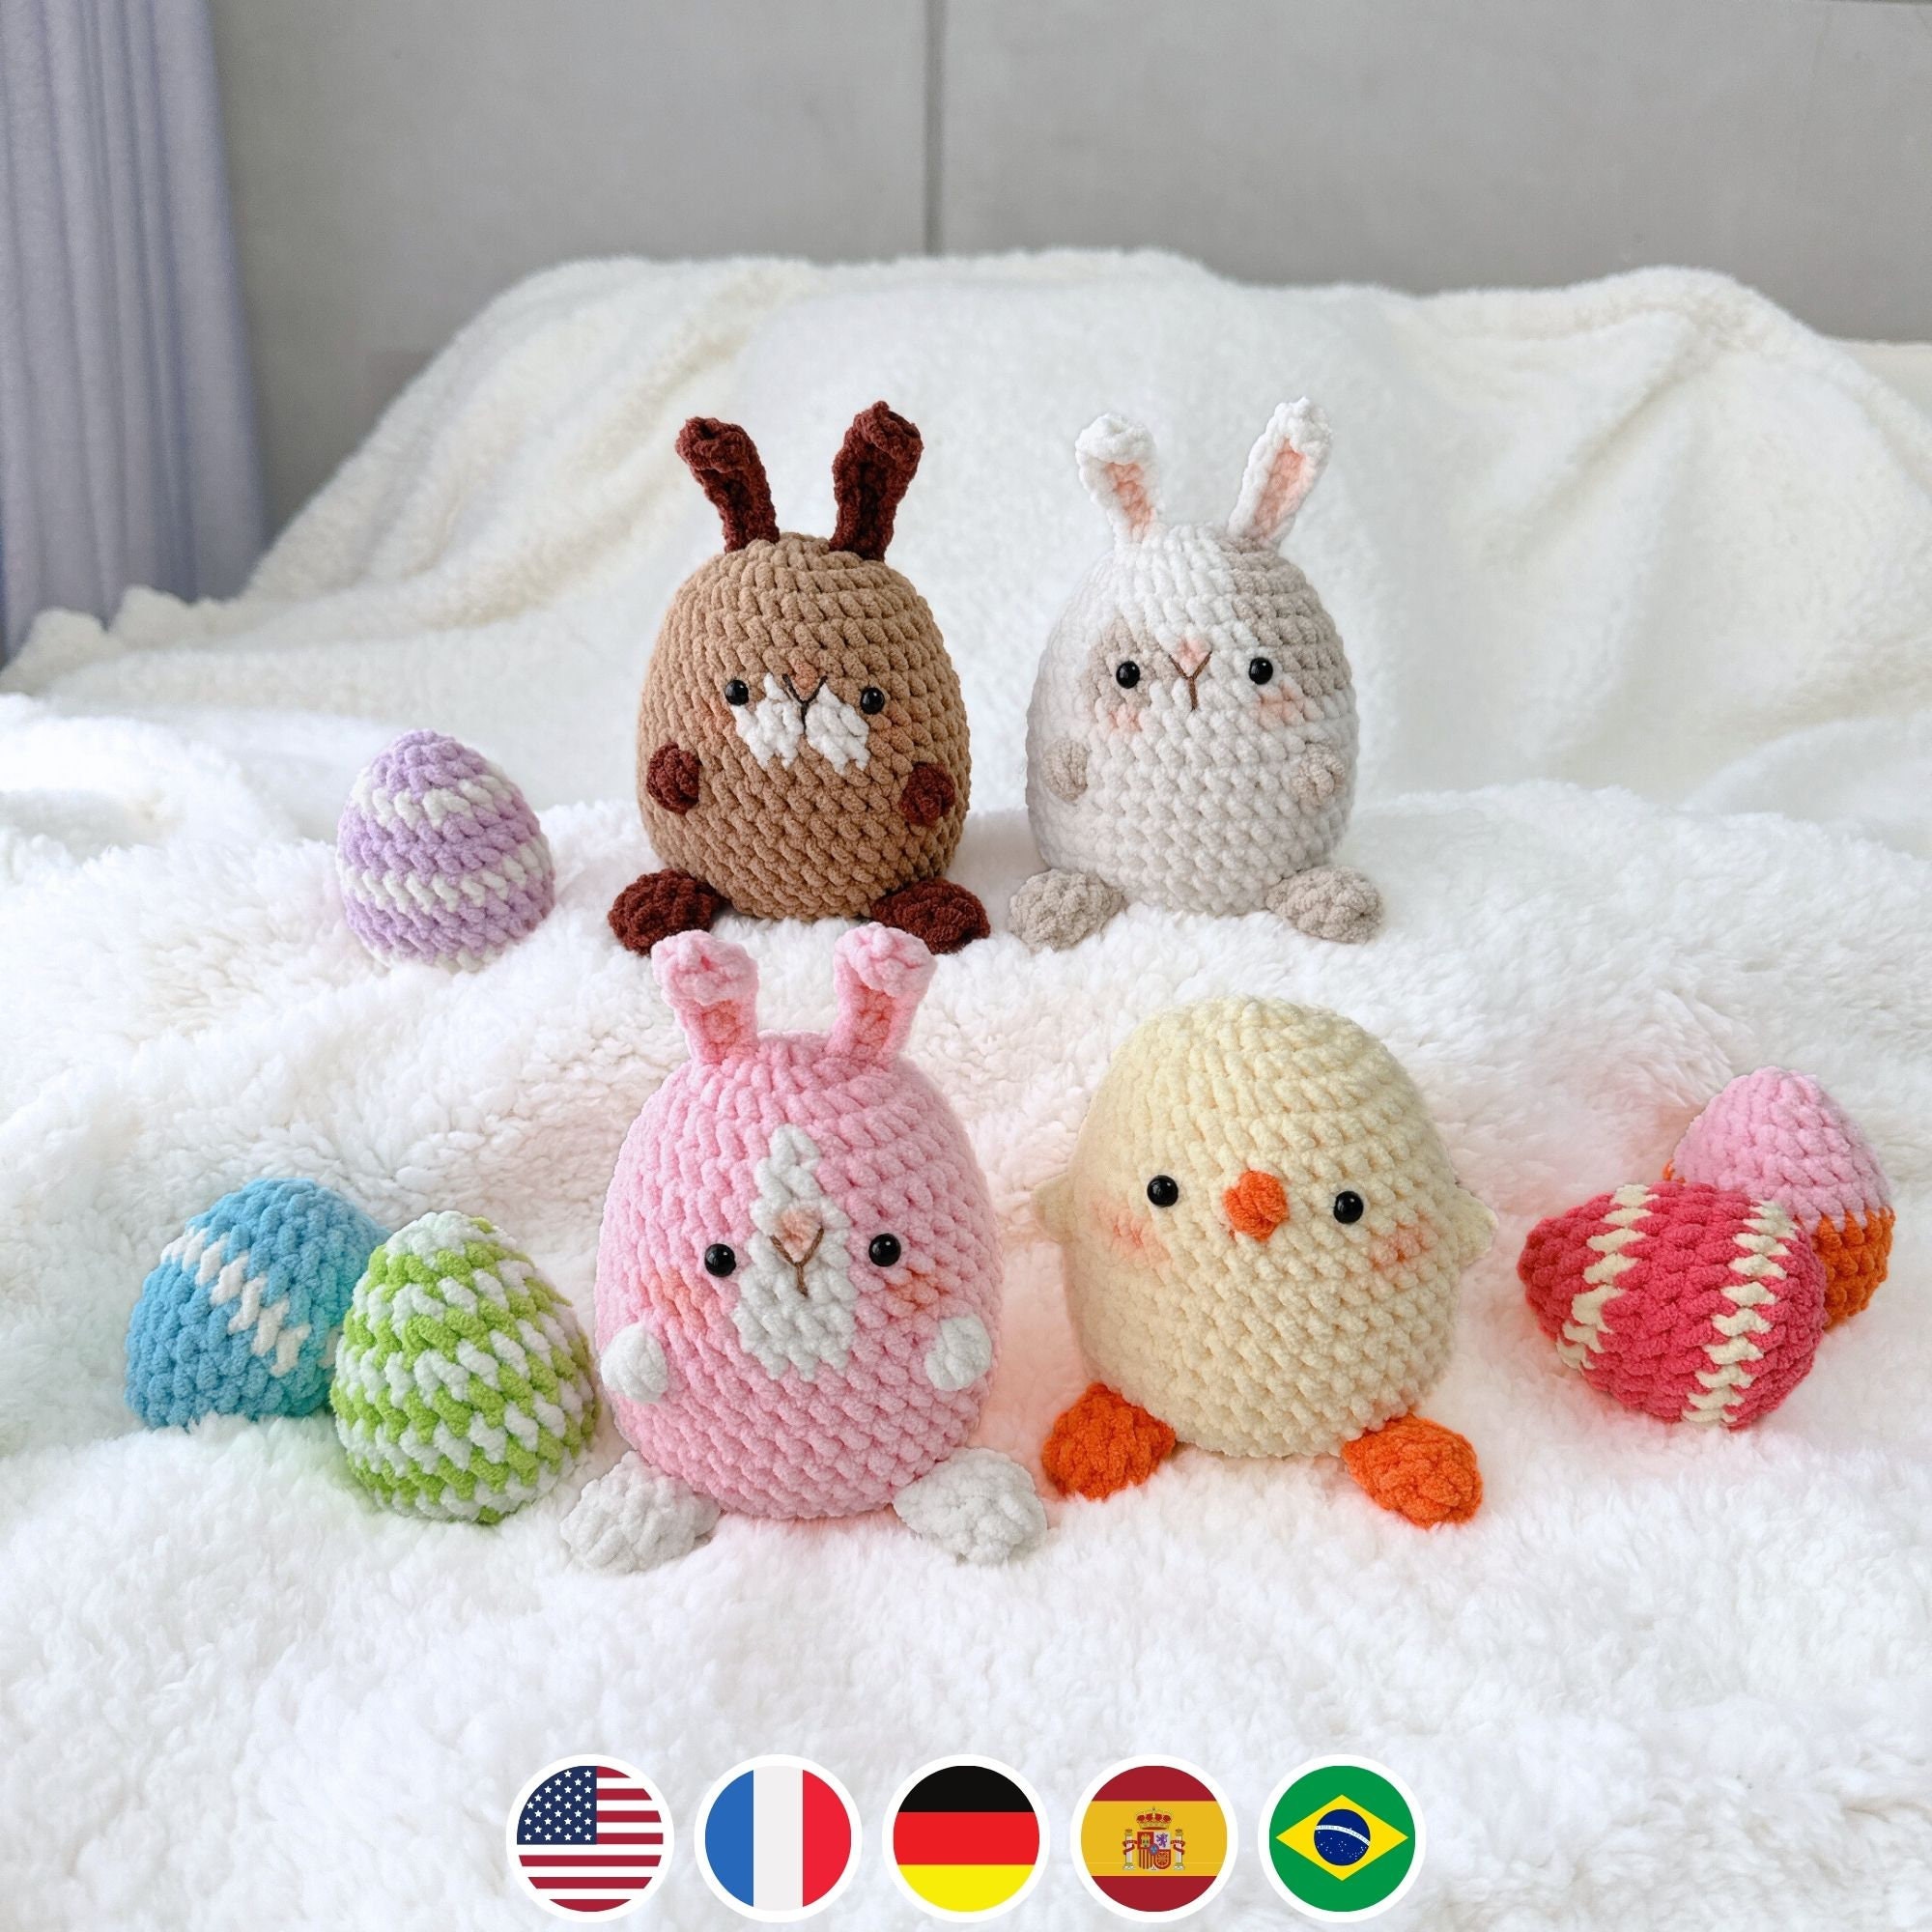 vidabita Beginner Crochet Kit - Rabbit Crochet Kit for Beginners